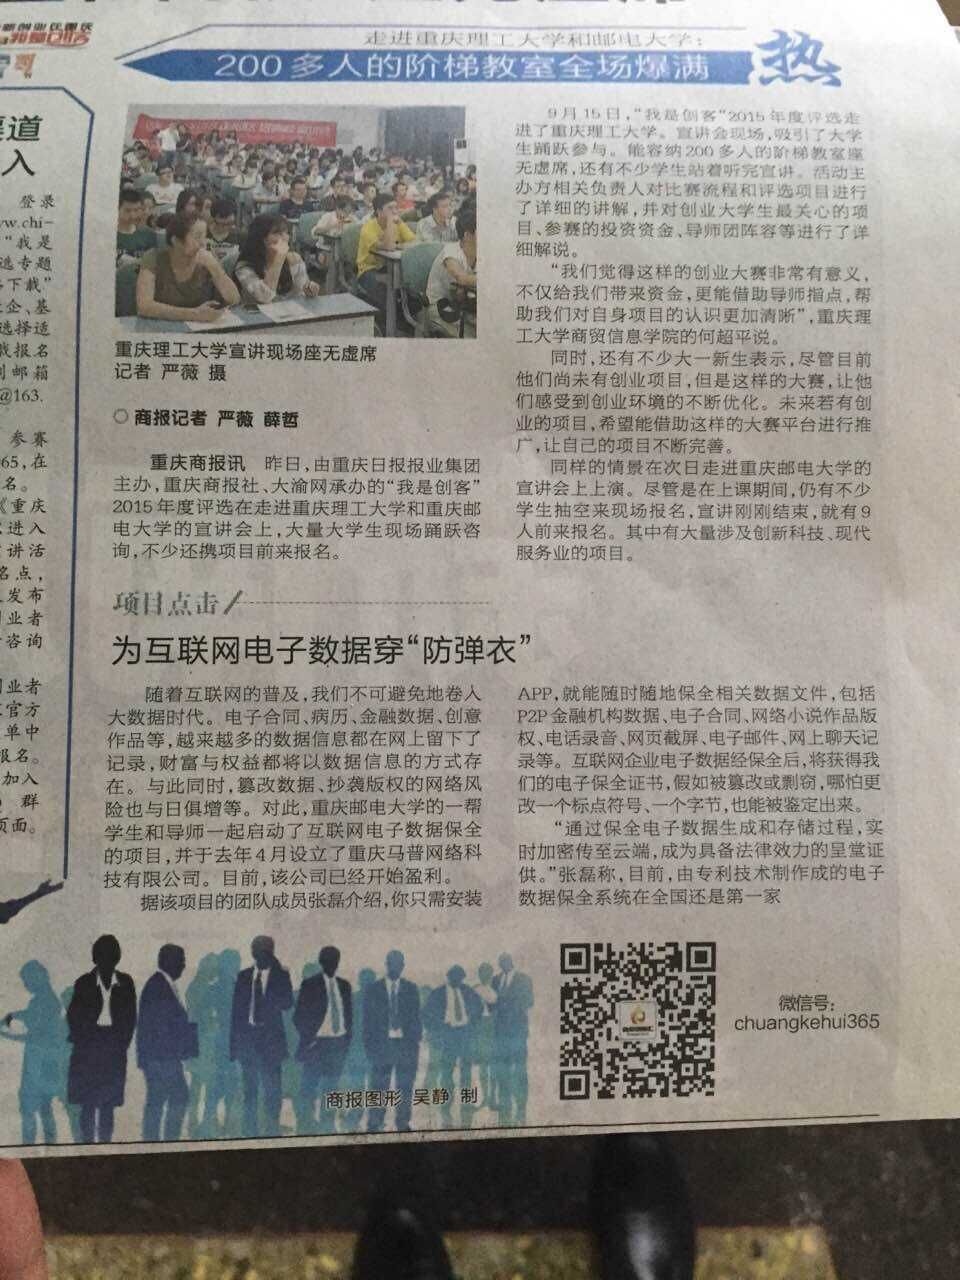 重庆马普网络科技有限公司受邀参加“我是创客”年度评选获好评